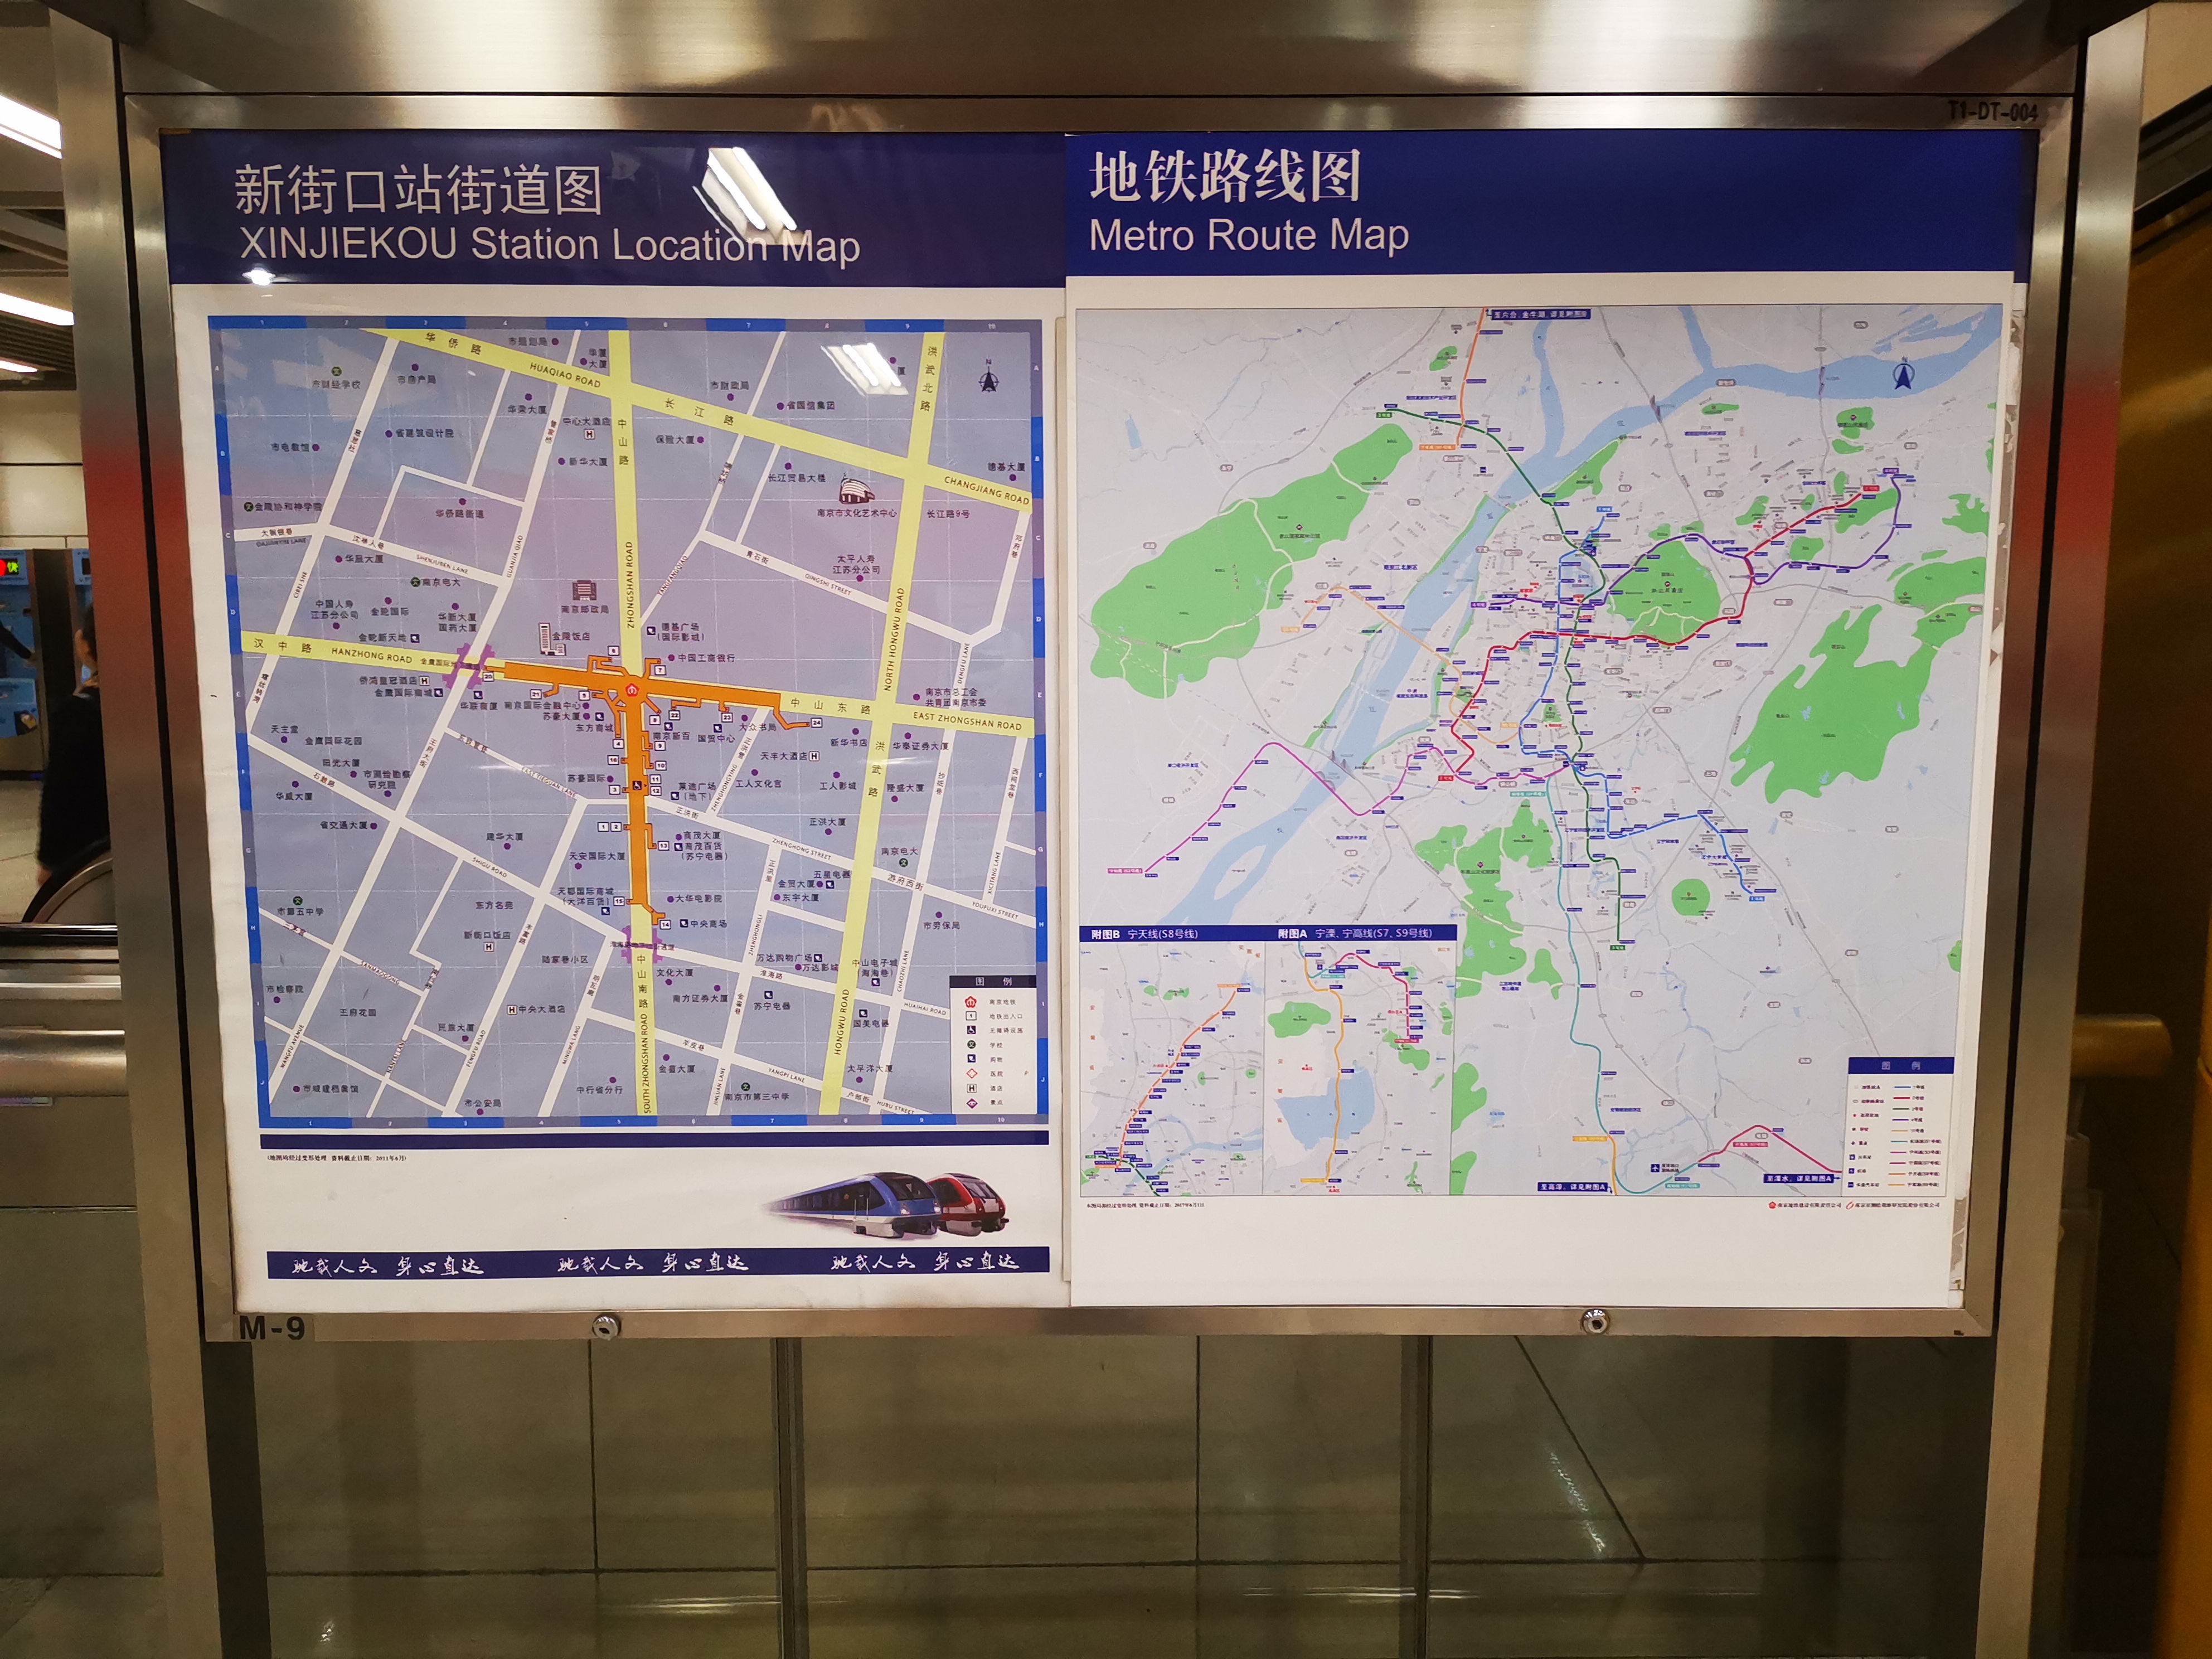 一不小心就转晕了92地址:可乘坐地铁在新街口站下车97南京美食